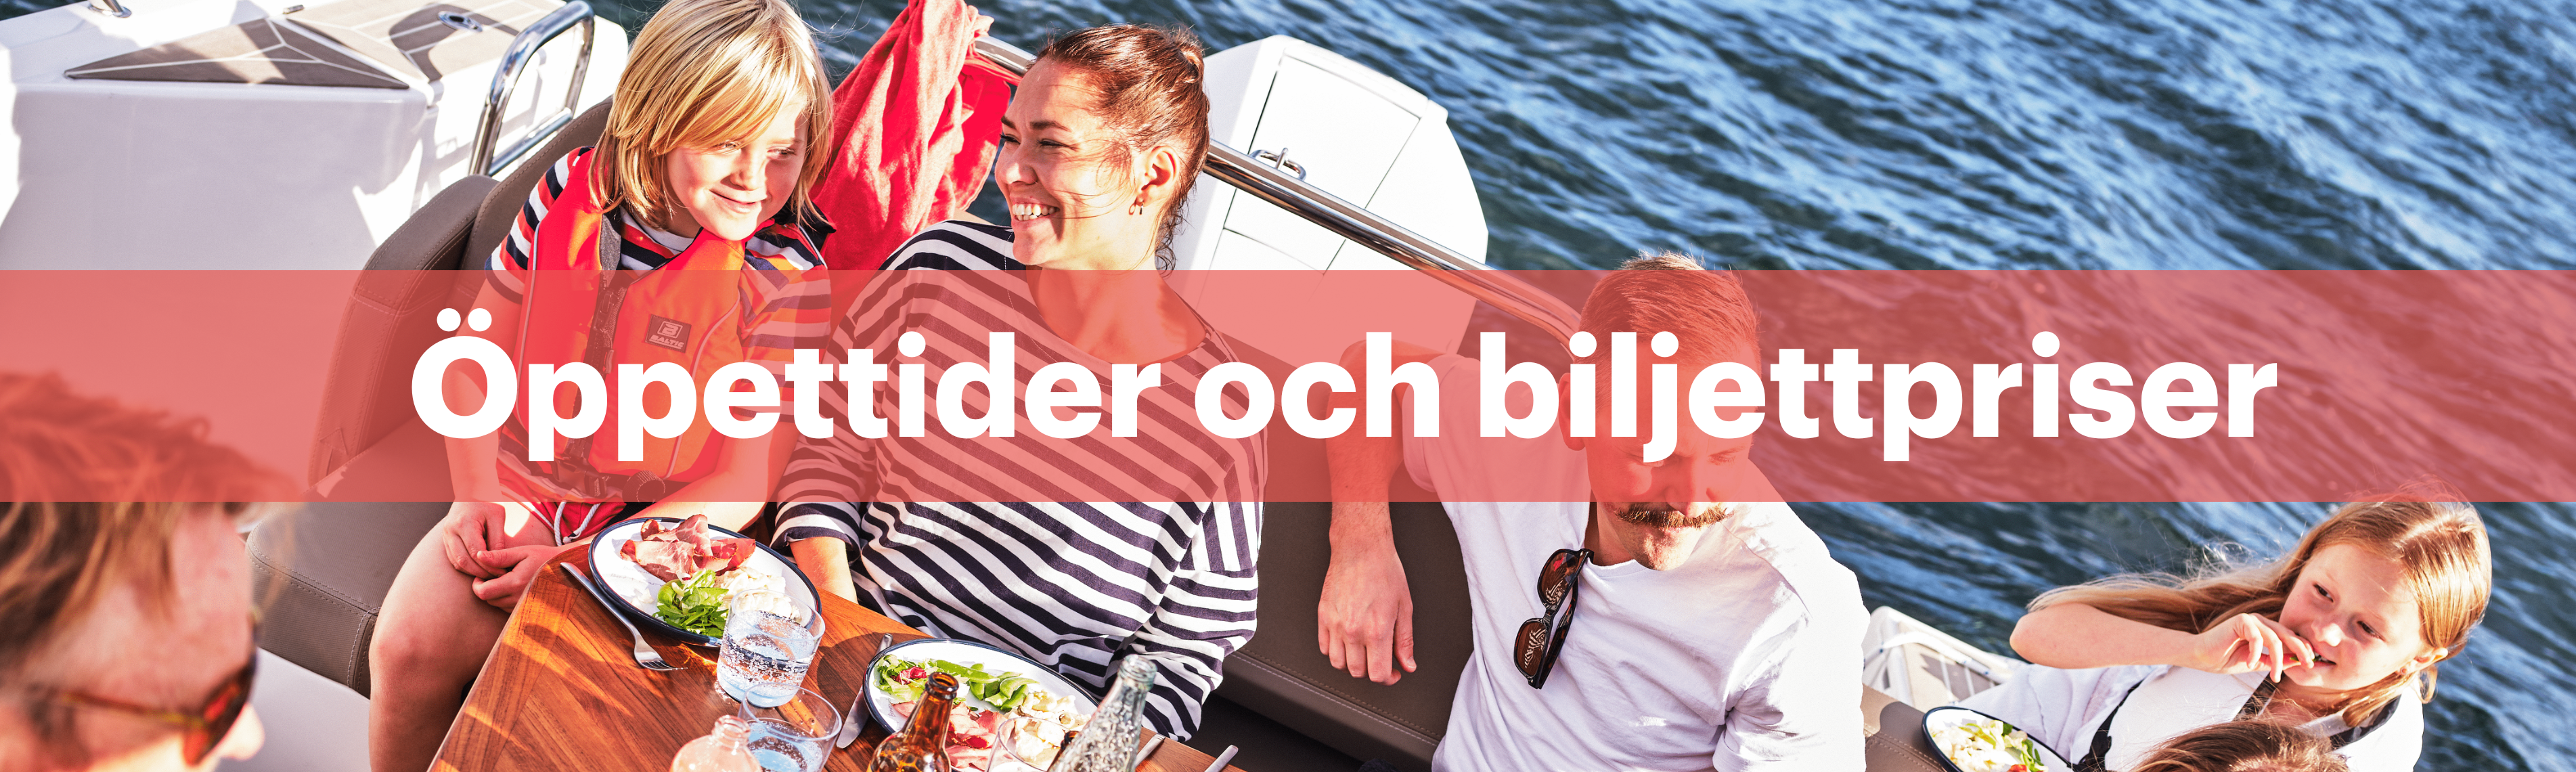 Text "Öppettider och biljettpriser" - mamma, pappa, morfar, barn - skrattandes i en båt i solen medan de äter lunch